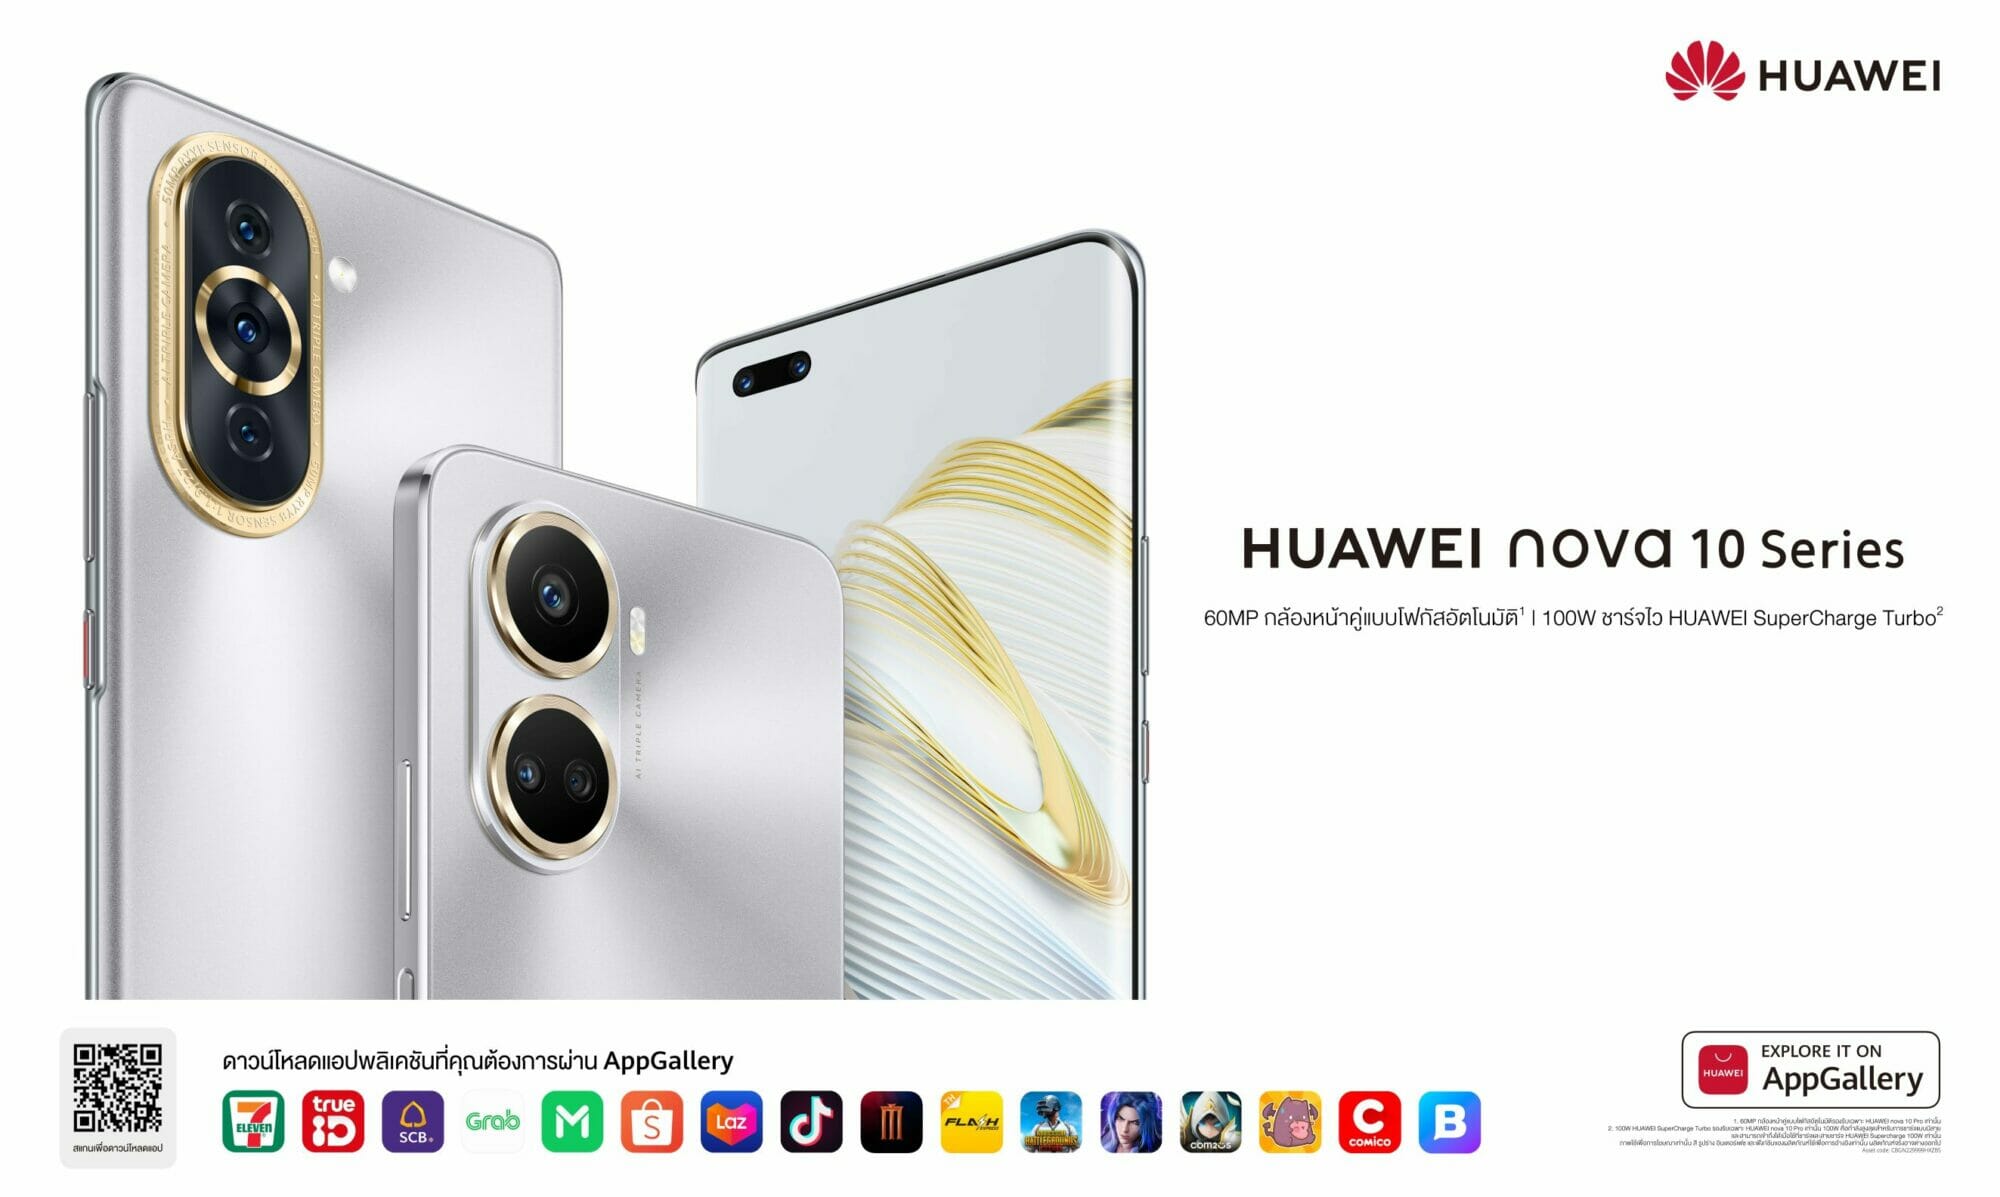 หัวเว่ยเอาใจคนรุ่นใหม่สายคอนเทนต์ เปิดตัว HUAWEI nova 10 Series สมาร์ทโฟนกล้องหน้าคู่ความละเอียด 60MP  3